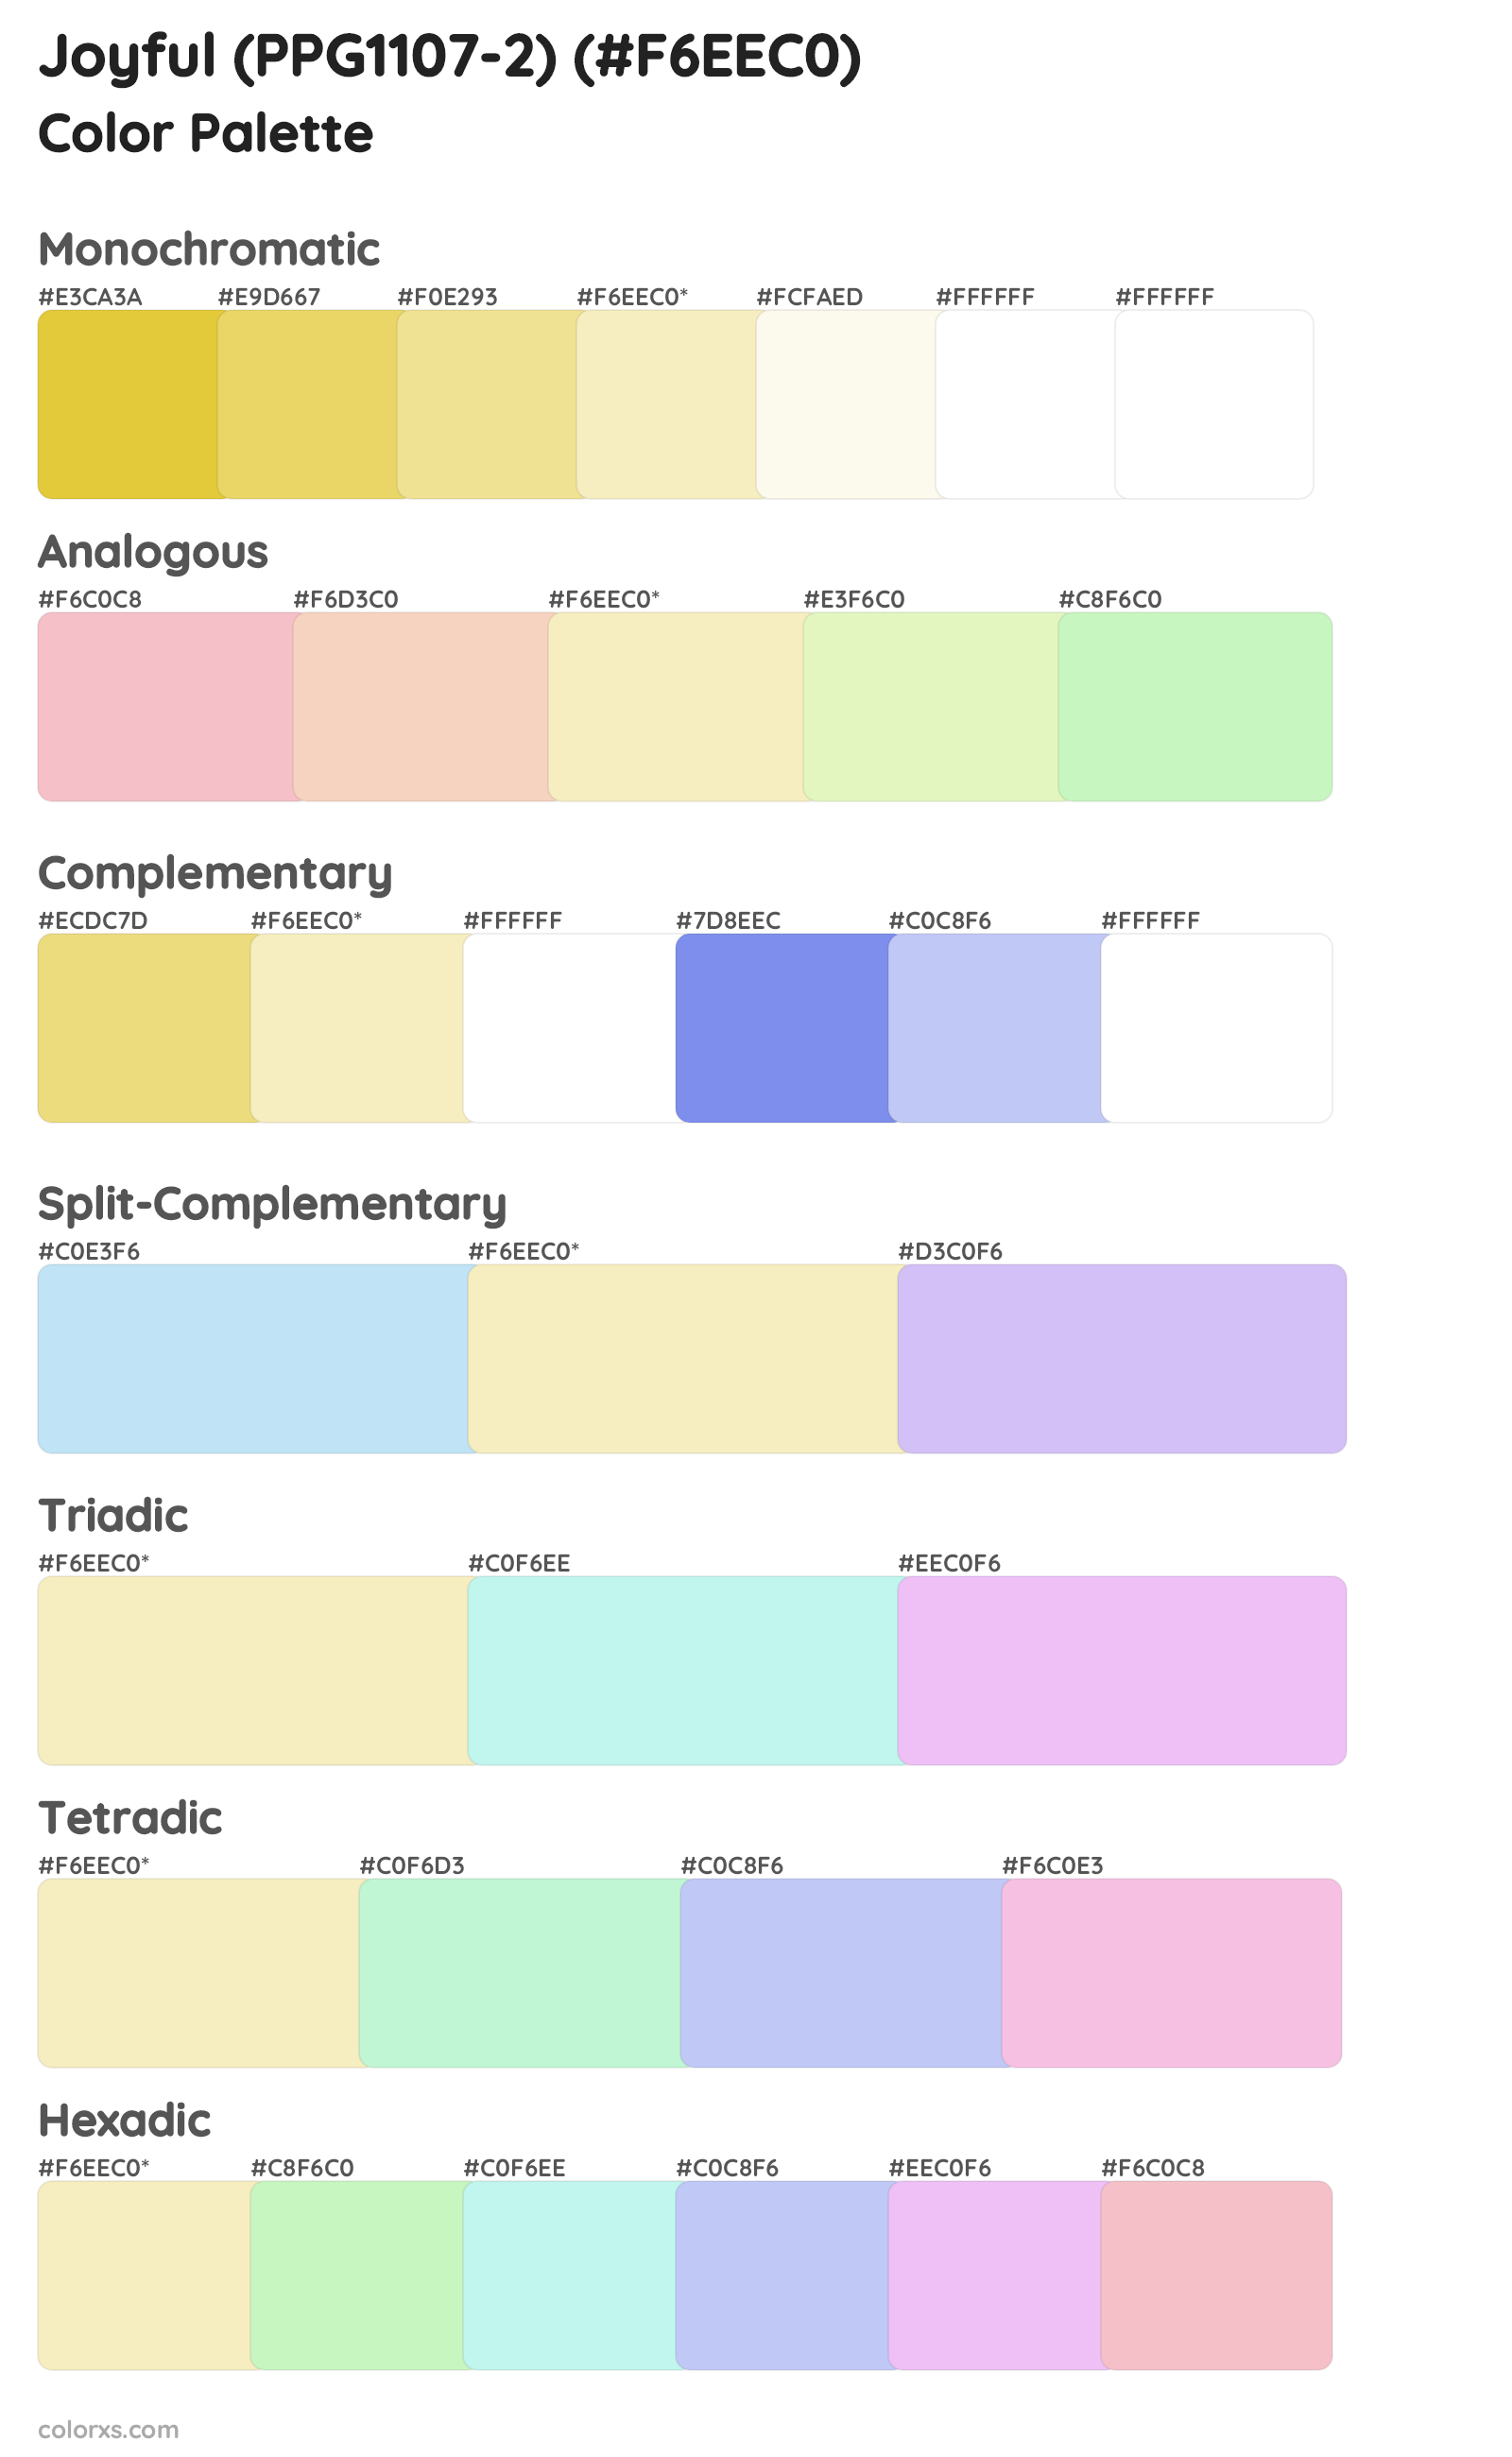 Joyful (PPG1107-2) Color Scheme Palettes